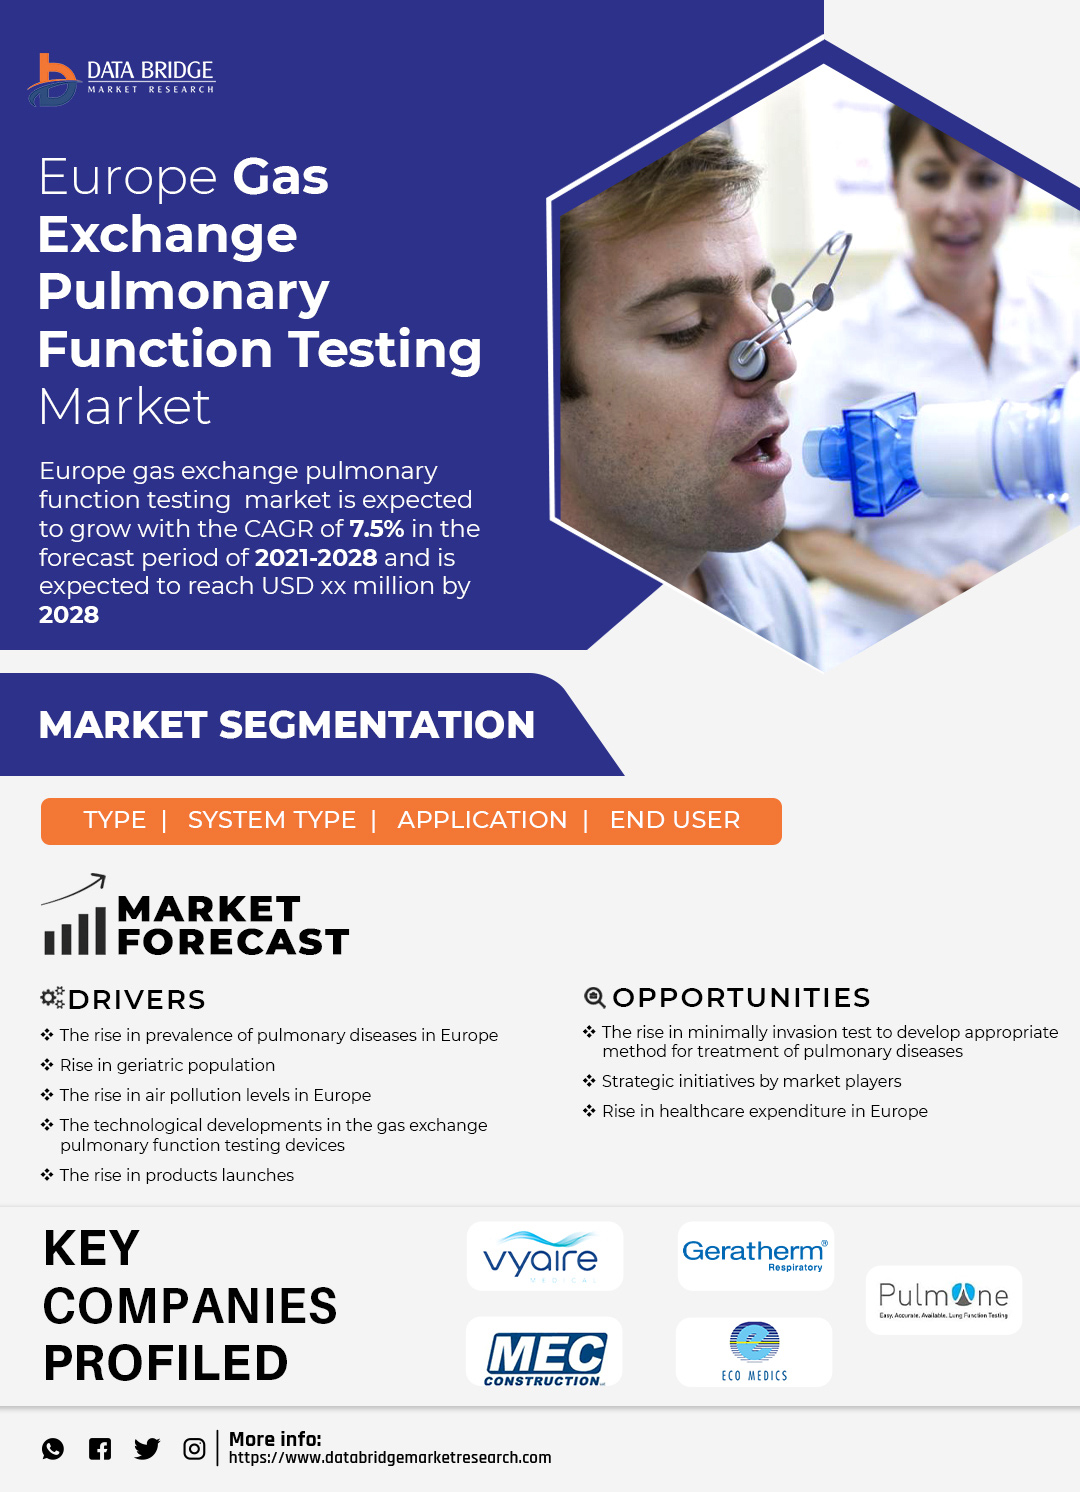 Europe Gas Exchange Pulmonary Function Testing Market